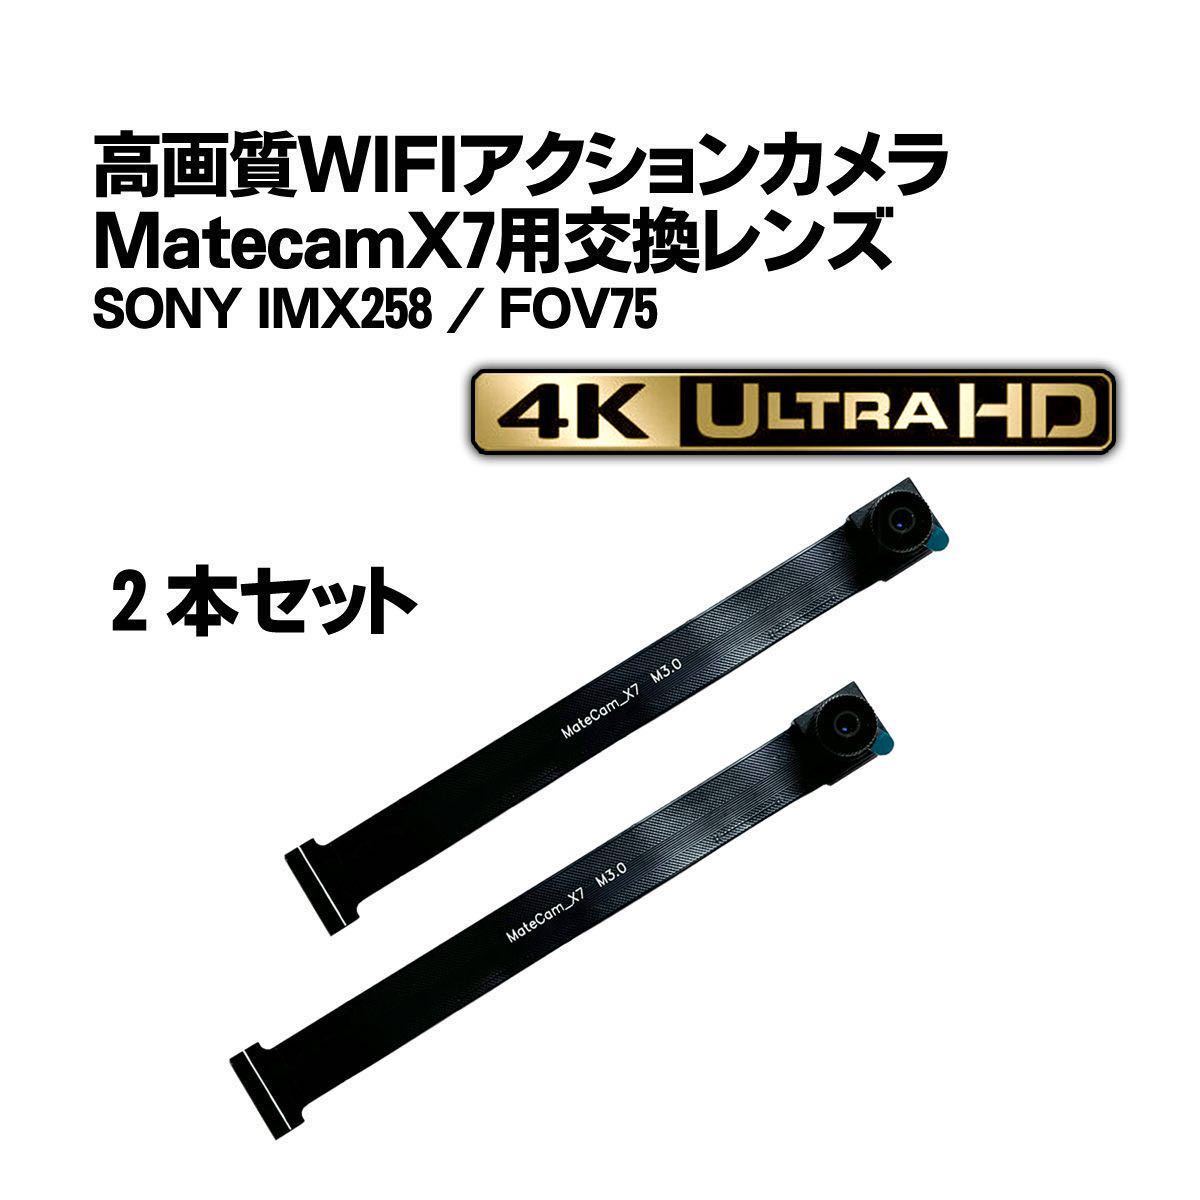 ★2本セット★Matecam X7 交換用レンズ【DIY仕様/SONY IMX258】WIFI 4Kカメラ 基盤型_画像1